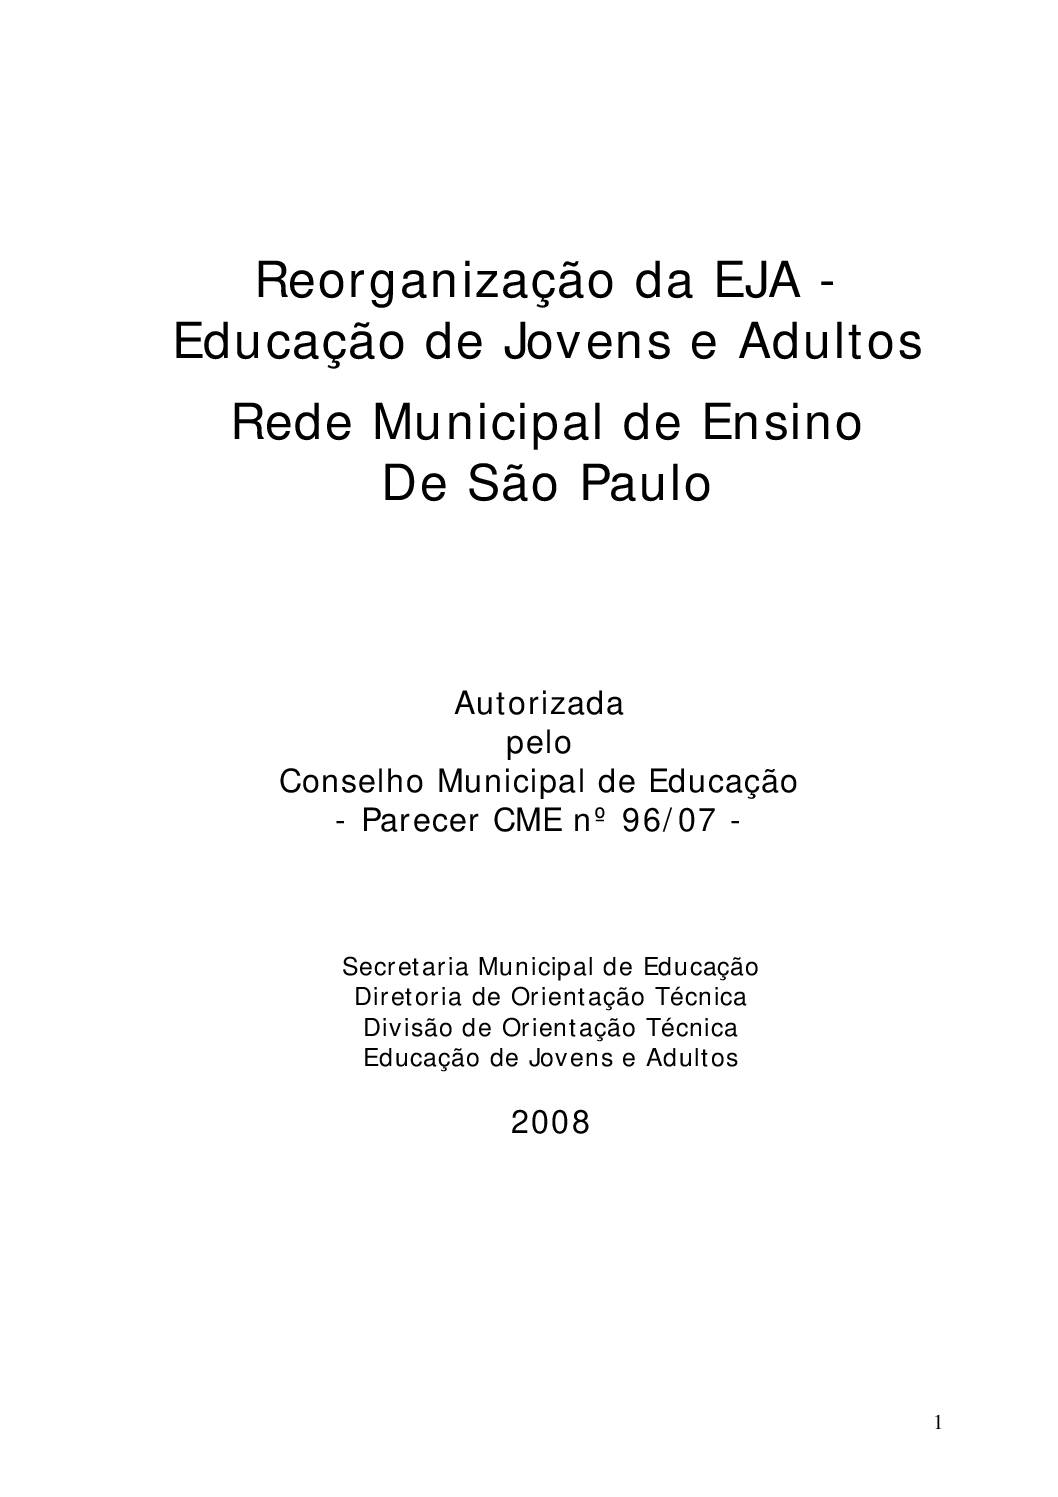 Reorganização da Educação de Jovens e Adultos - EJA: autorizada pelo Conselho  Municipal de Educação - Parecer CME nº 96/07.